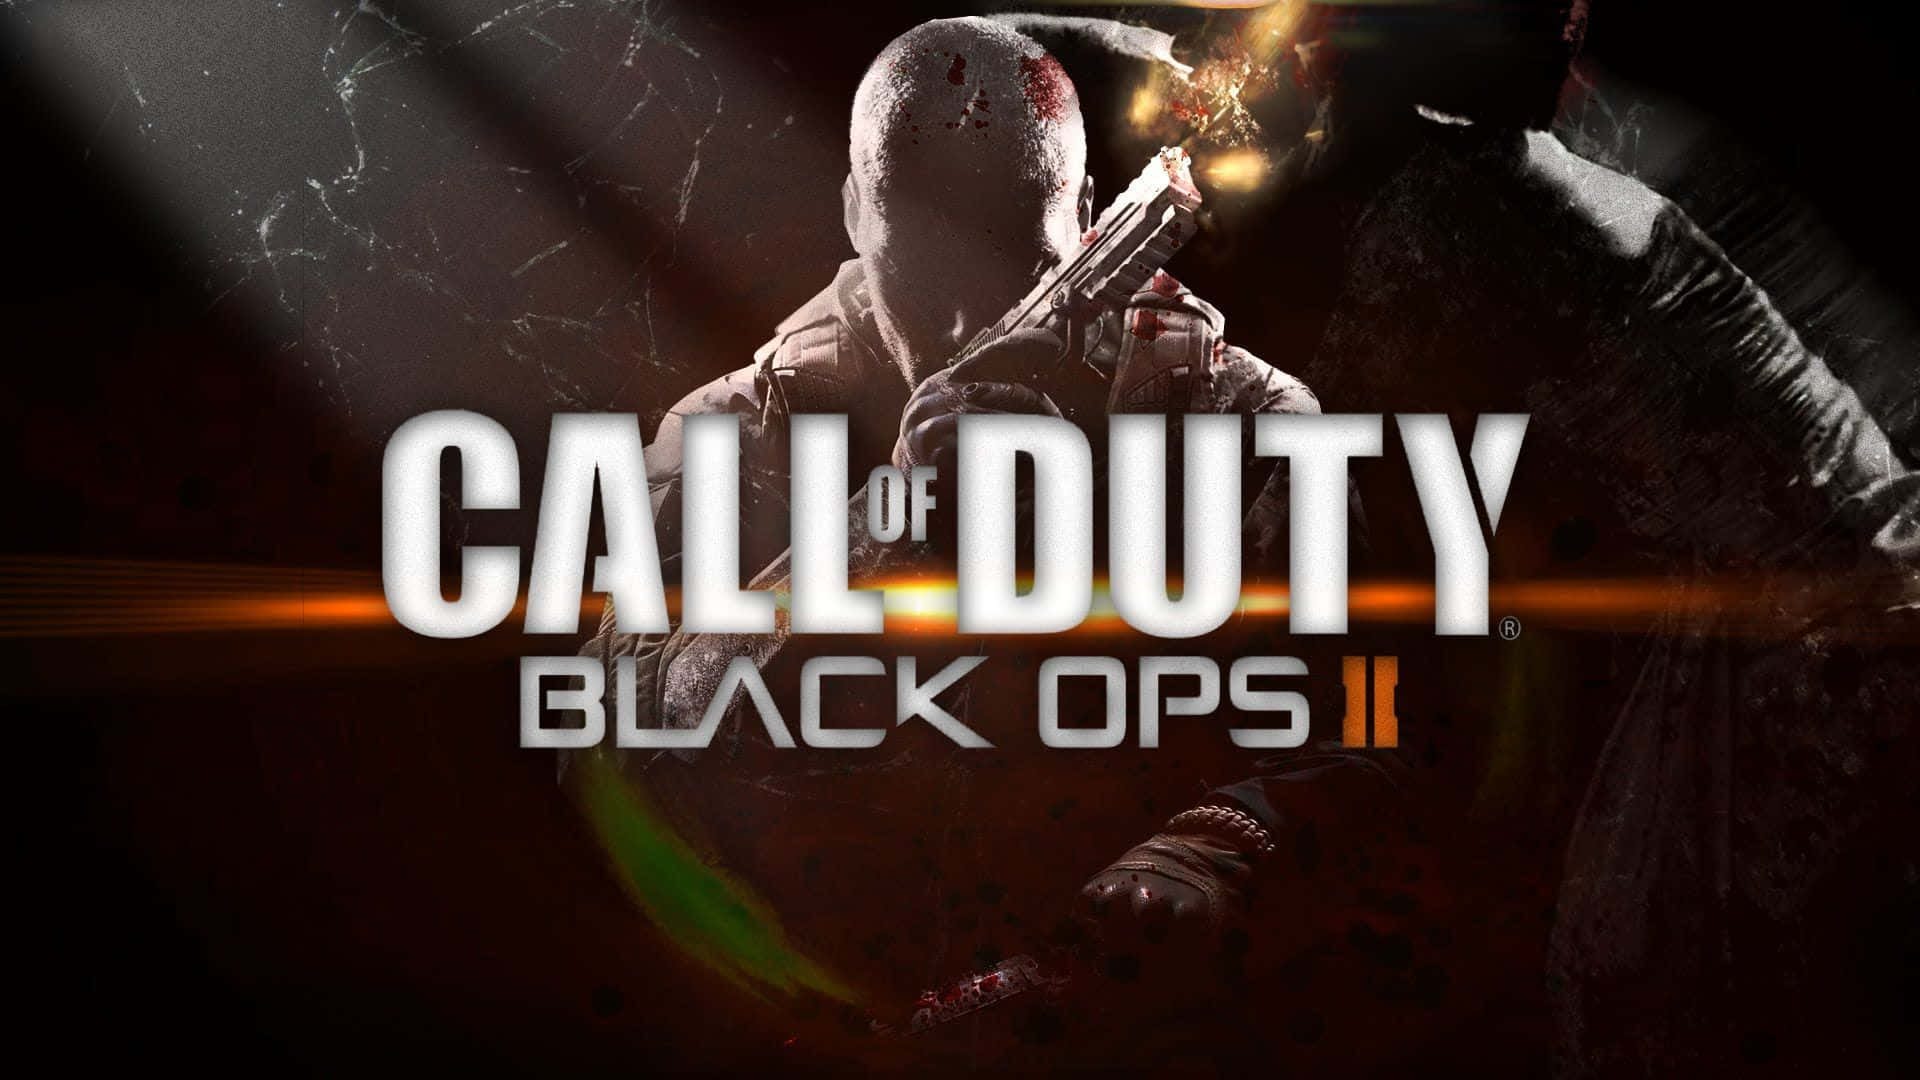 Attkämpa I Call Of Duty: Black Ops Ii På Tapeten Till Min Dator Eller Mobiltelefon. Wallpaper